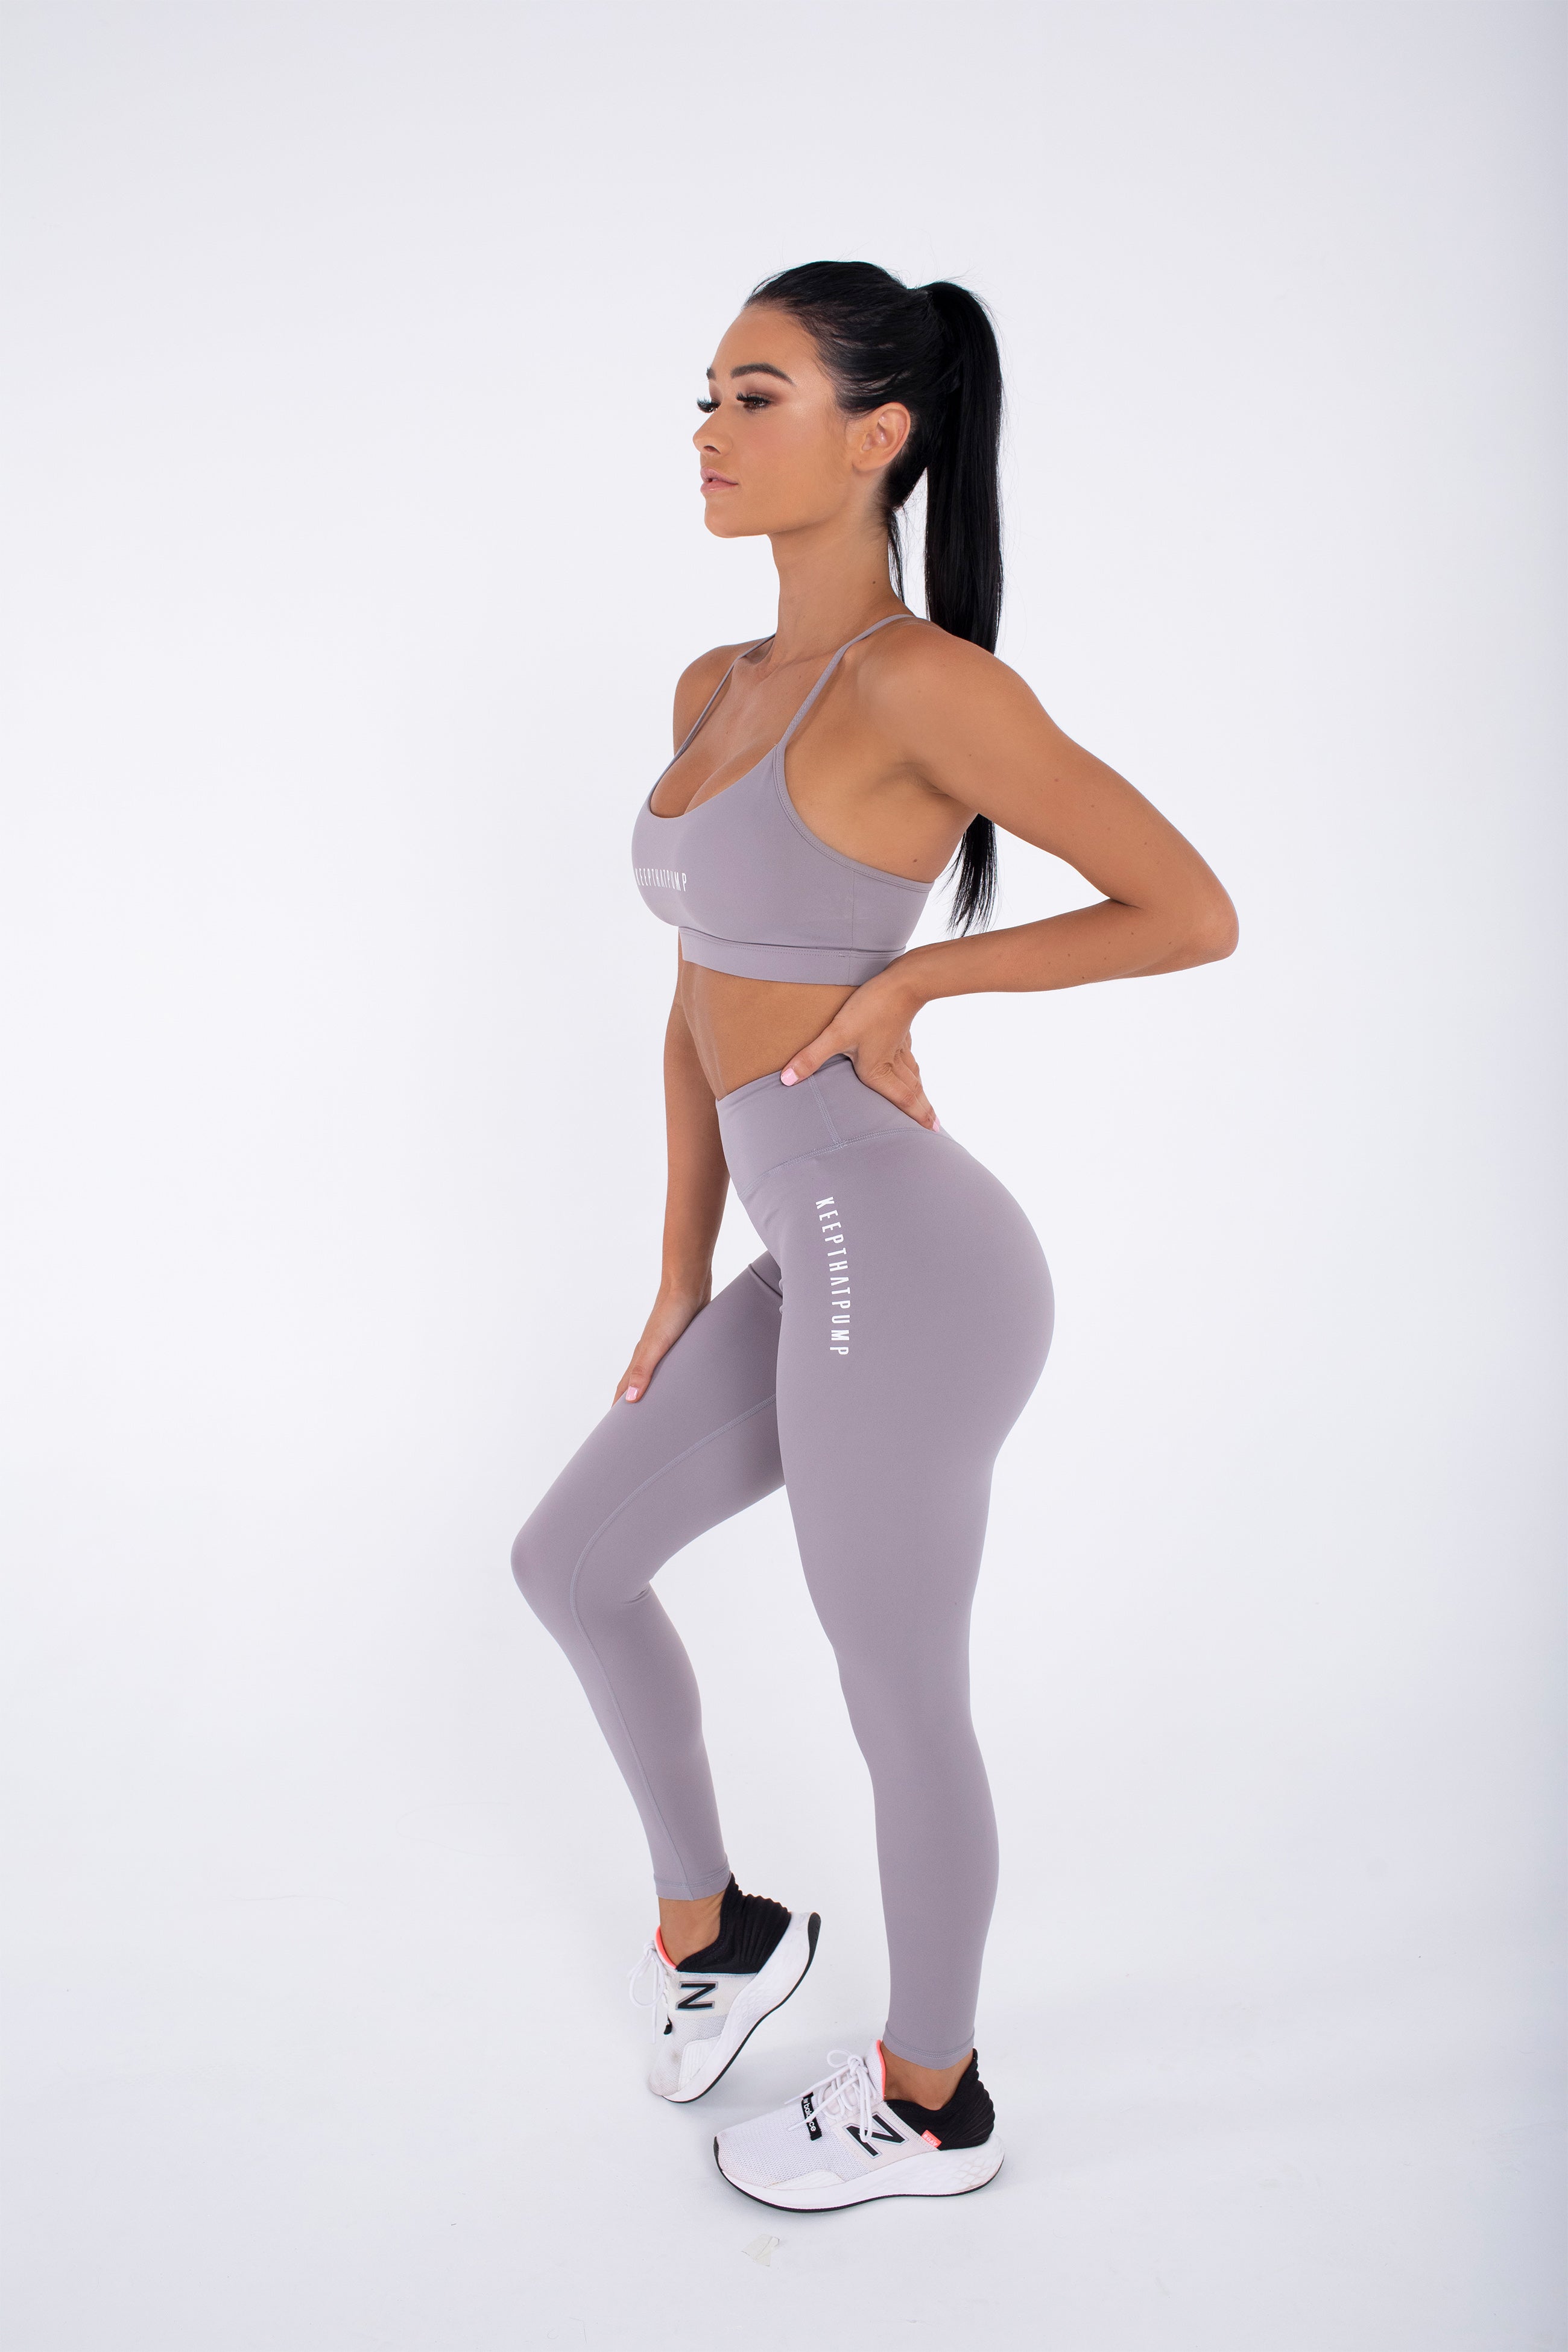 HyperElite Fitness Shorts – LotusLyfe